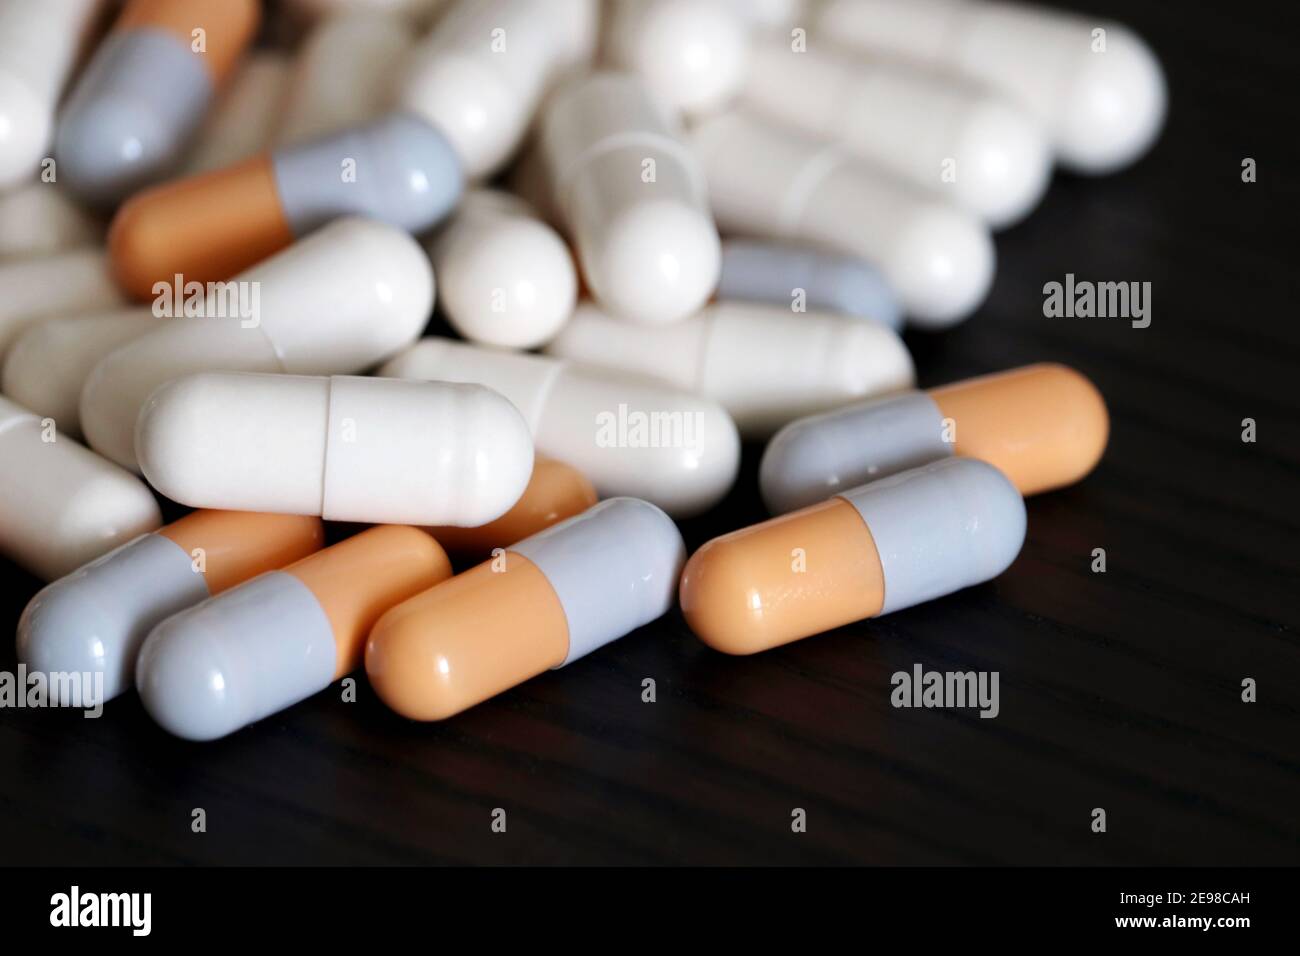 Pilules sur une table en bois sombre, variété de médicaments en capsules. Contexte pour la pharmacie, les antibiotiques, les vitamines Banque D'Images